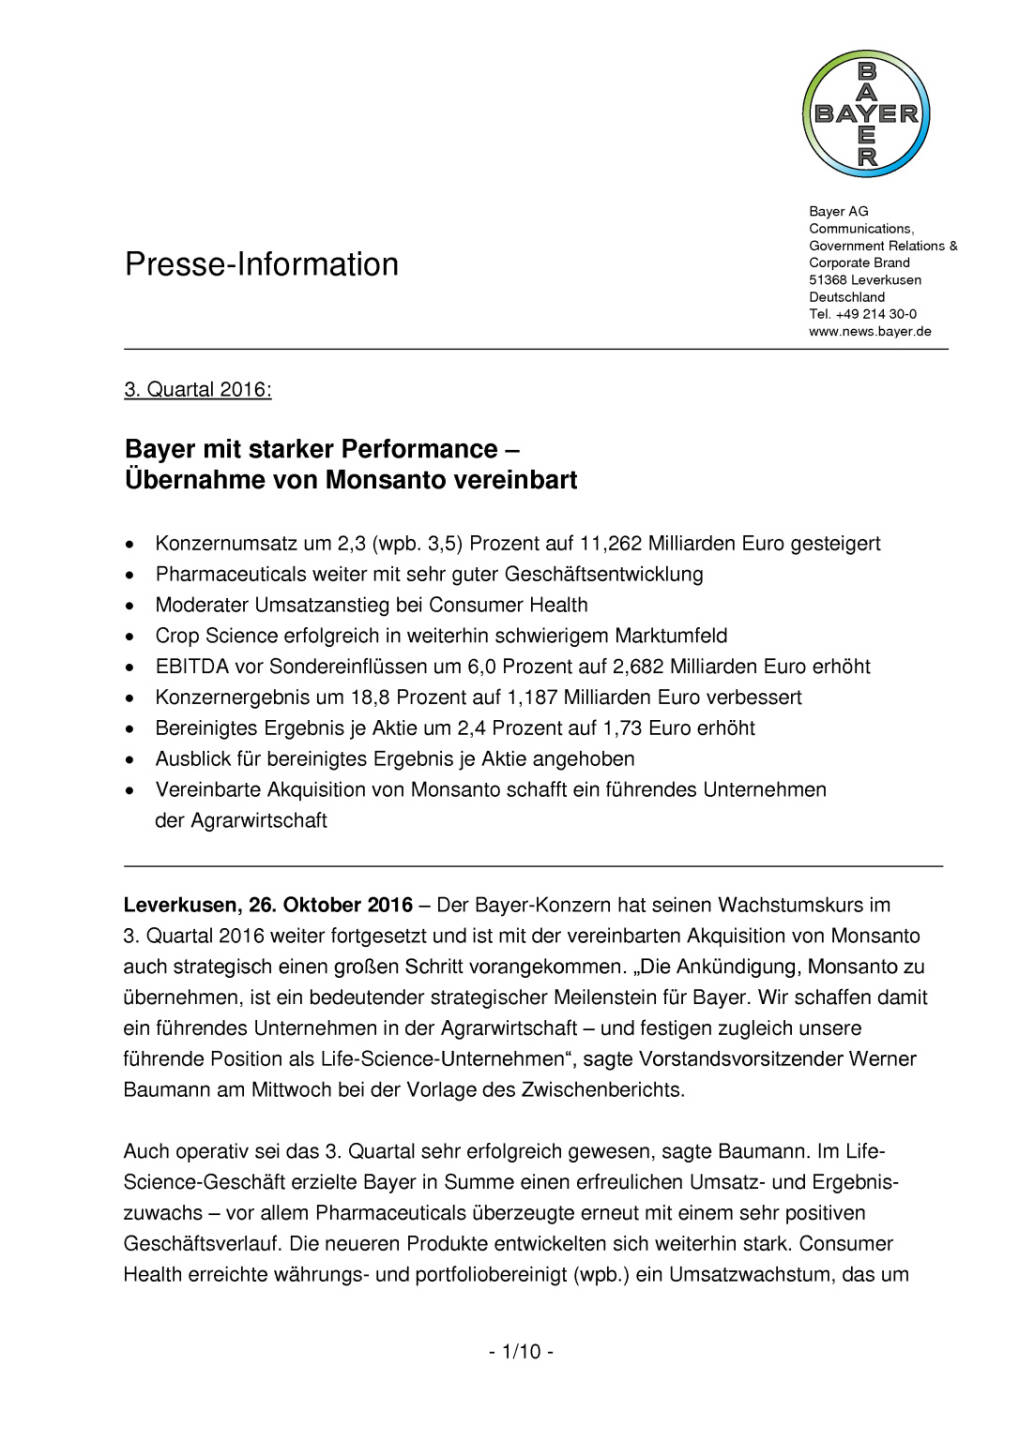 Bayer: Übernahme von Monsanto vereinbart, Seite 1/10, komplettes Dokument unter http://boerse-social.com/static/uploads/file_1934_bayer_ubernahme_von_monsanto_vereinbart.pdf